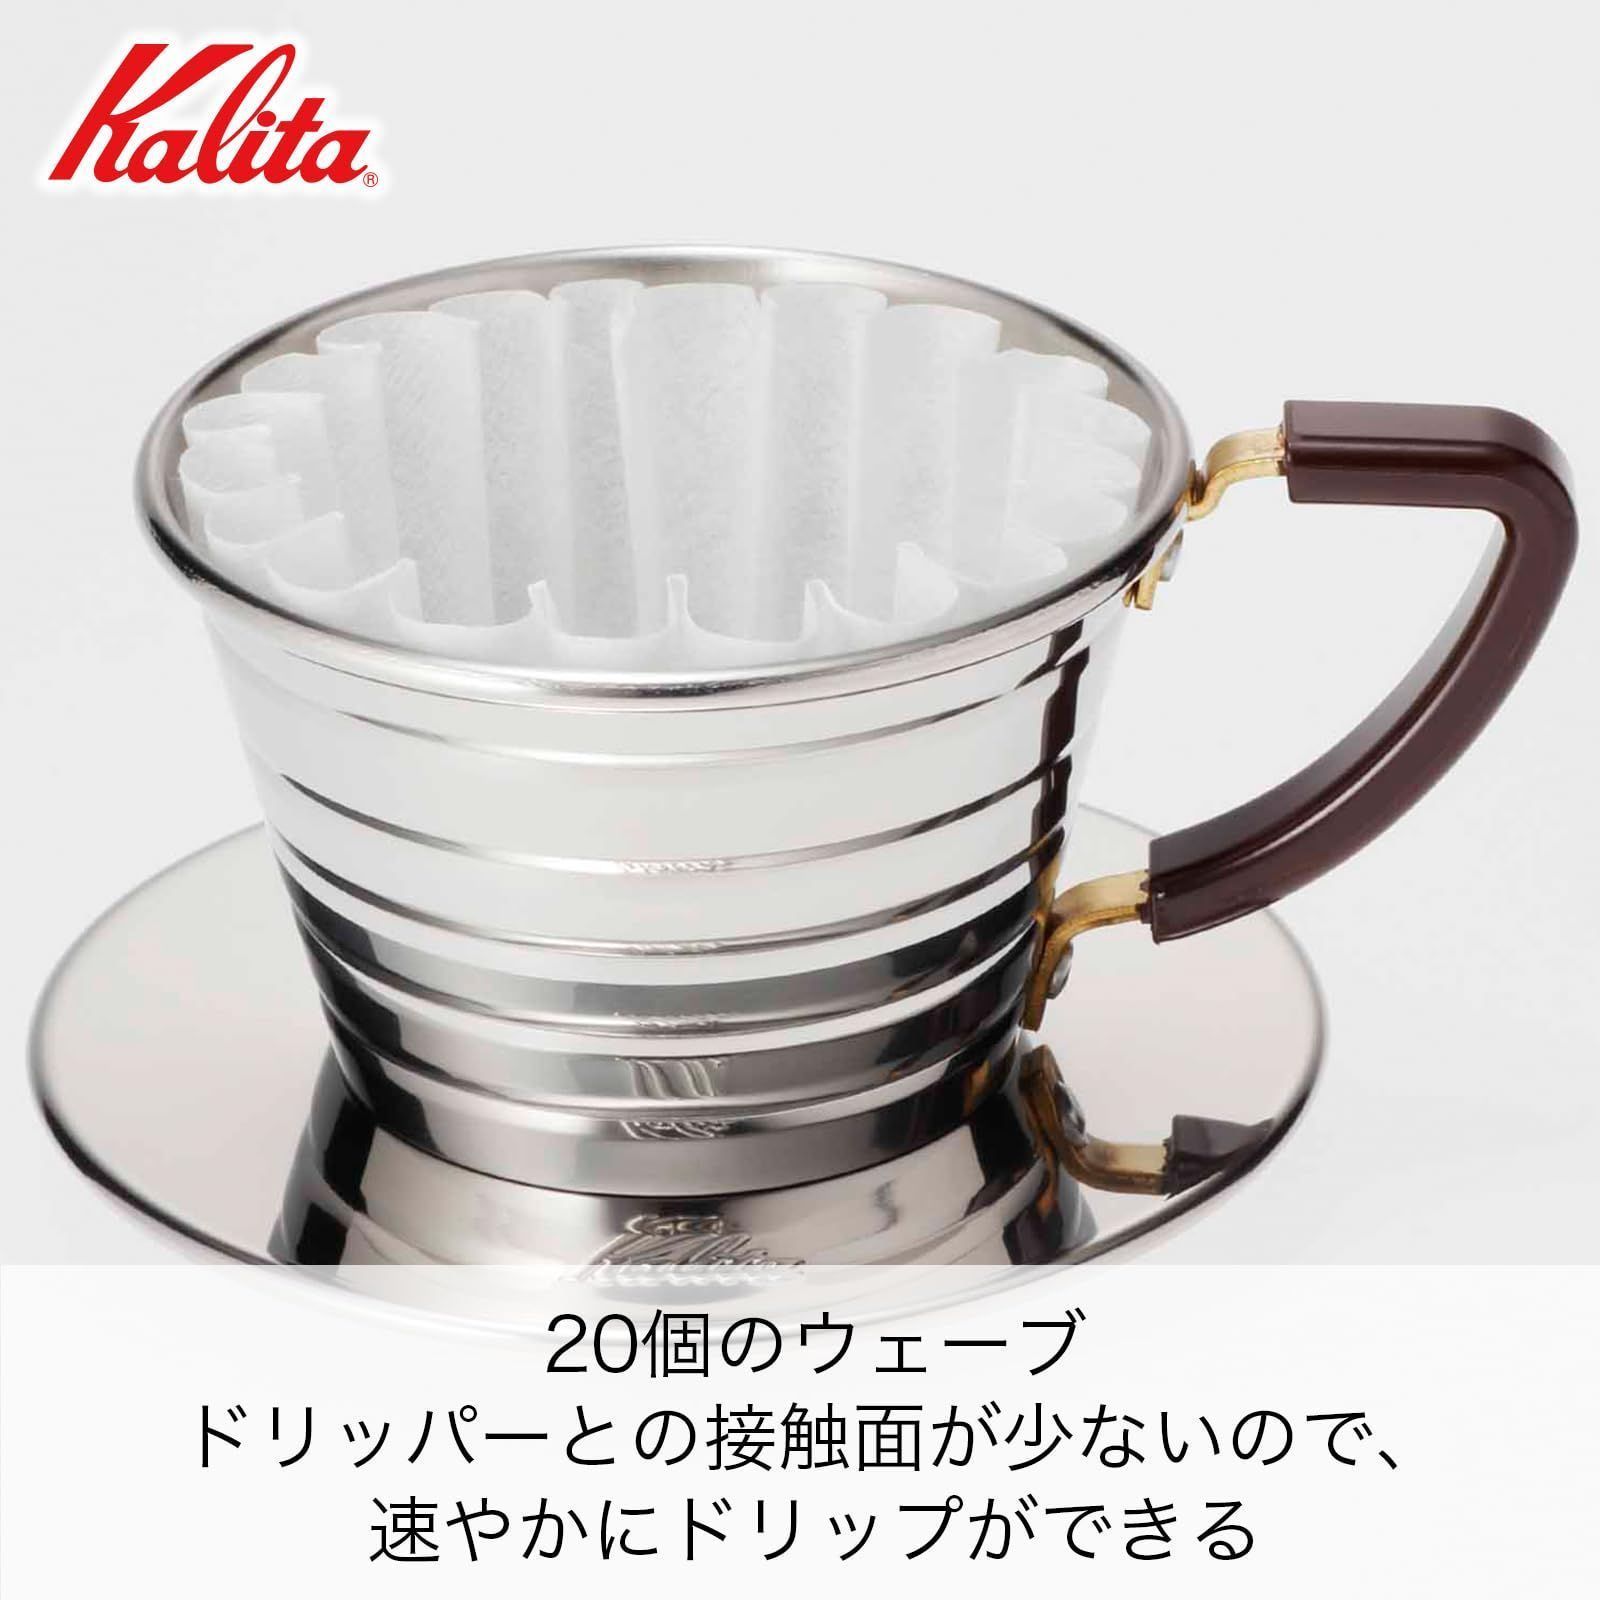 人気商品カリタ Kalita コーヒー ドリッパー ウェーブシリーズ ステンレス